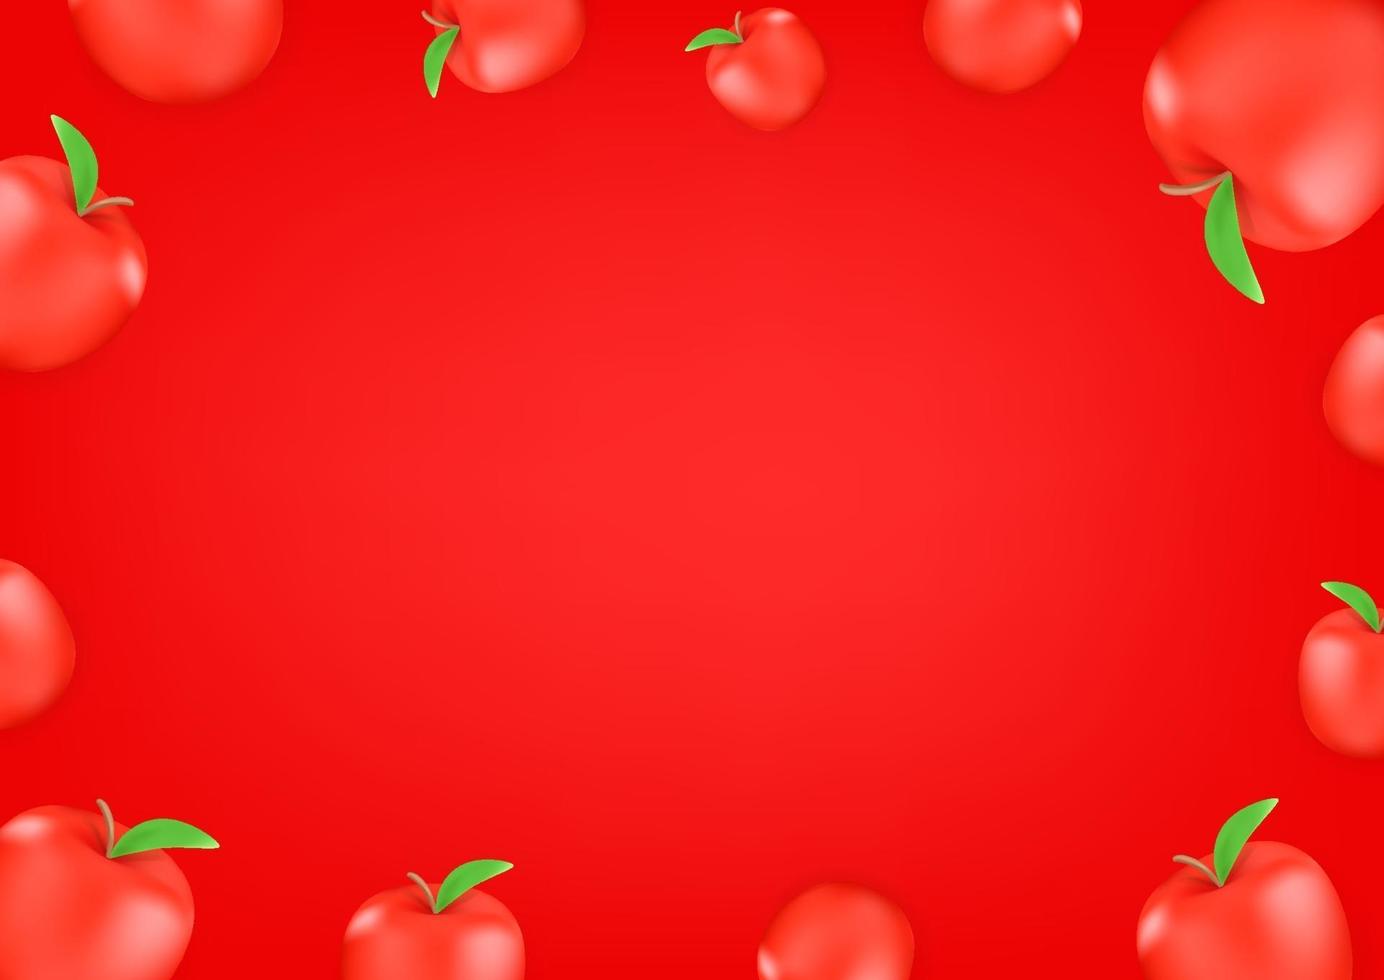 moldura de papel de parede de maçãs vermelhas vetor